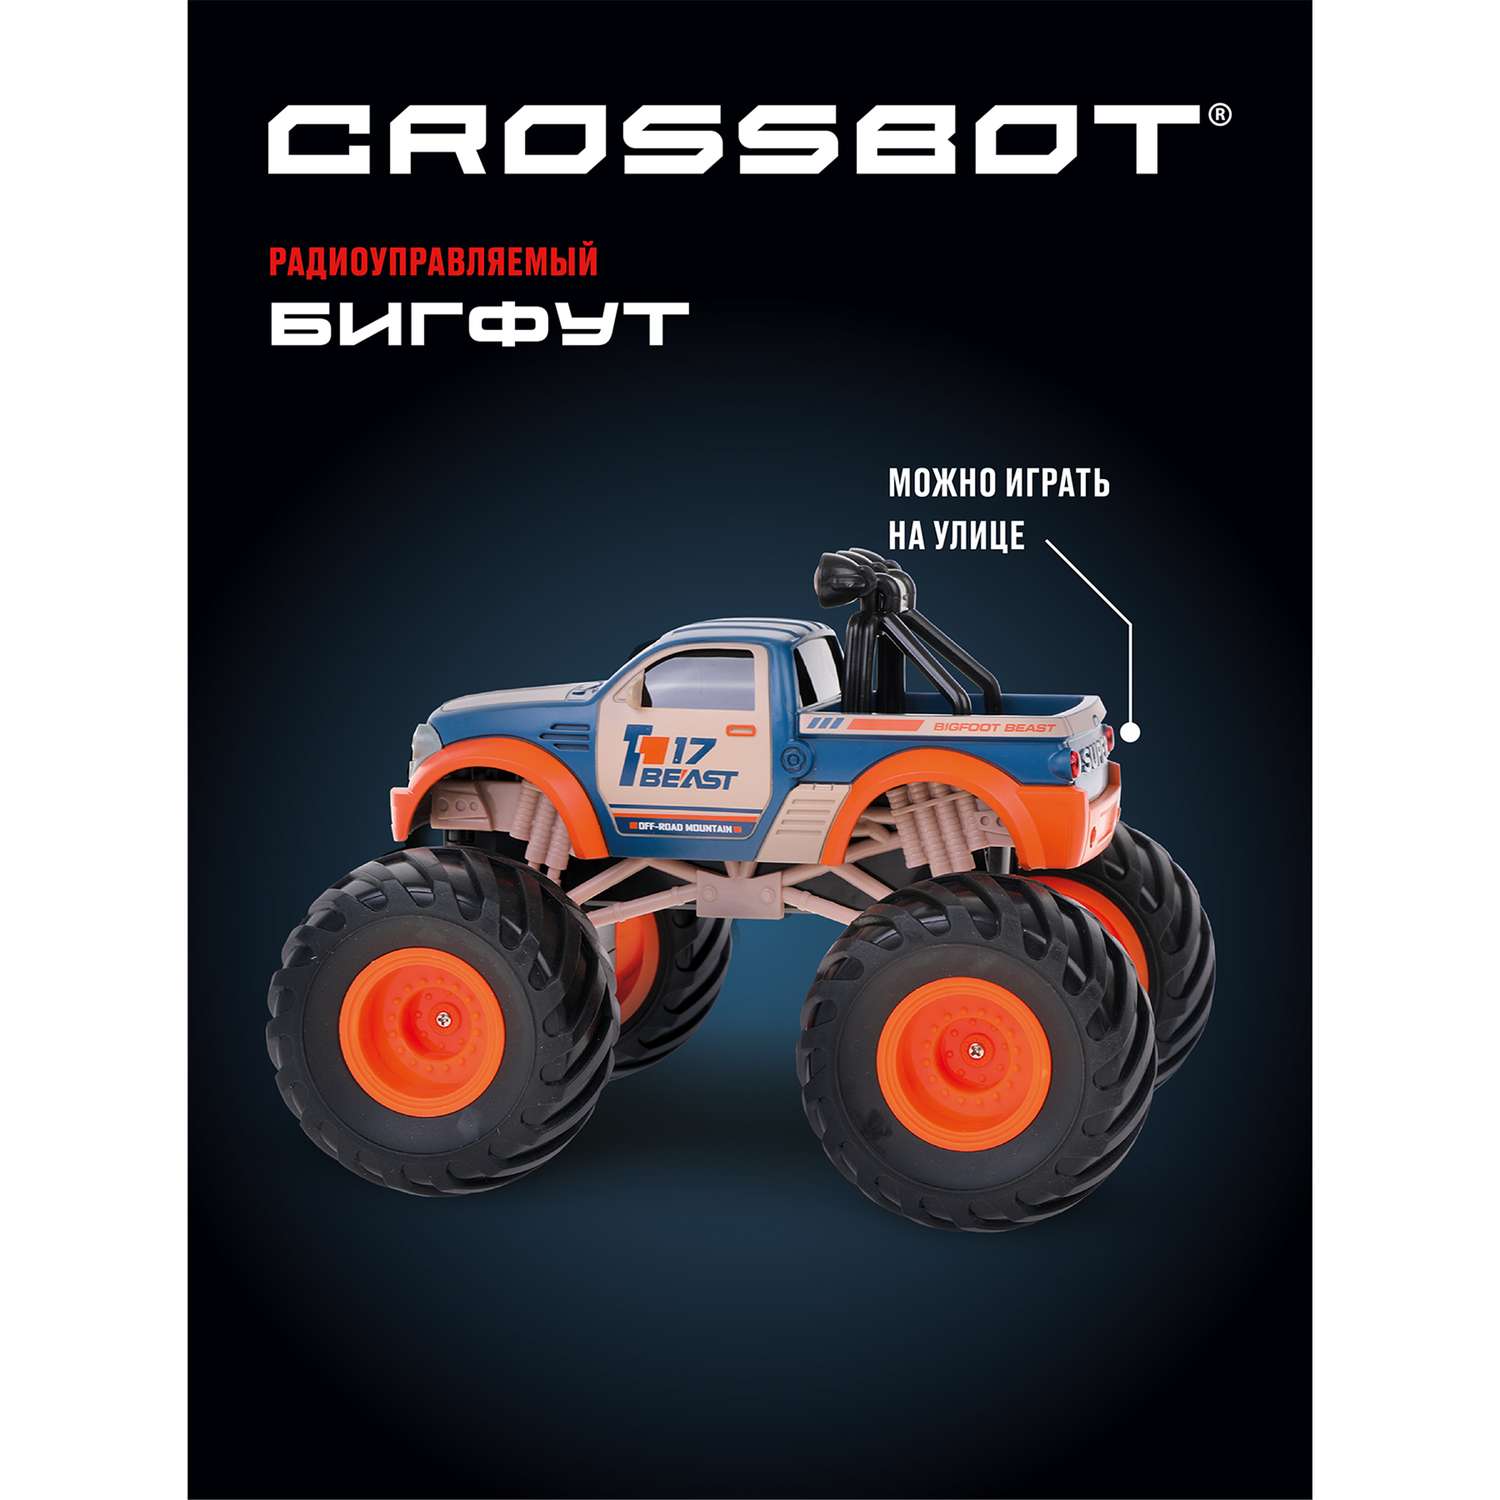 Машина на пульте управления CROSSBOT Бигфут сине-оранжевая - фото 2